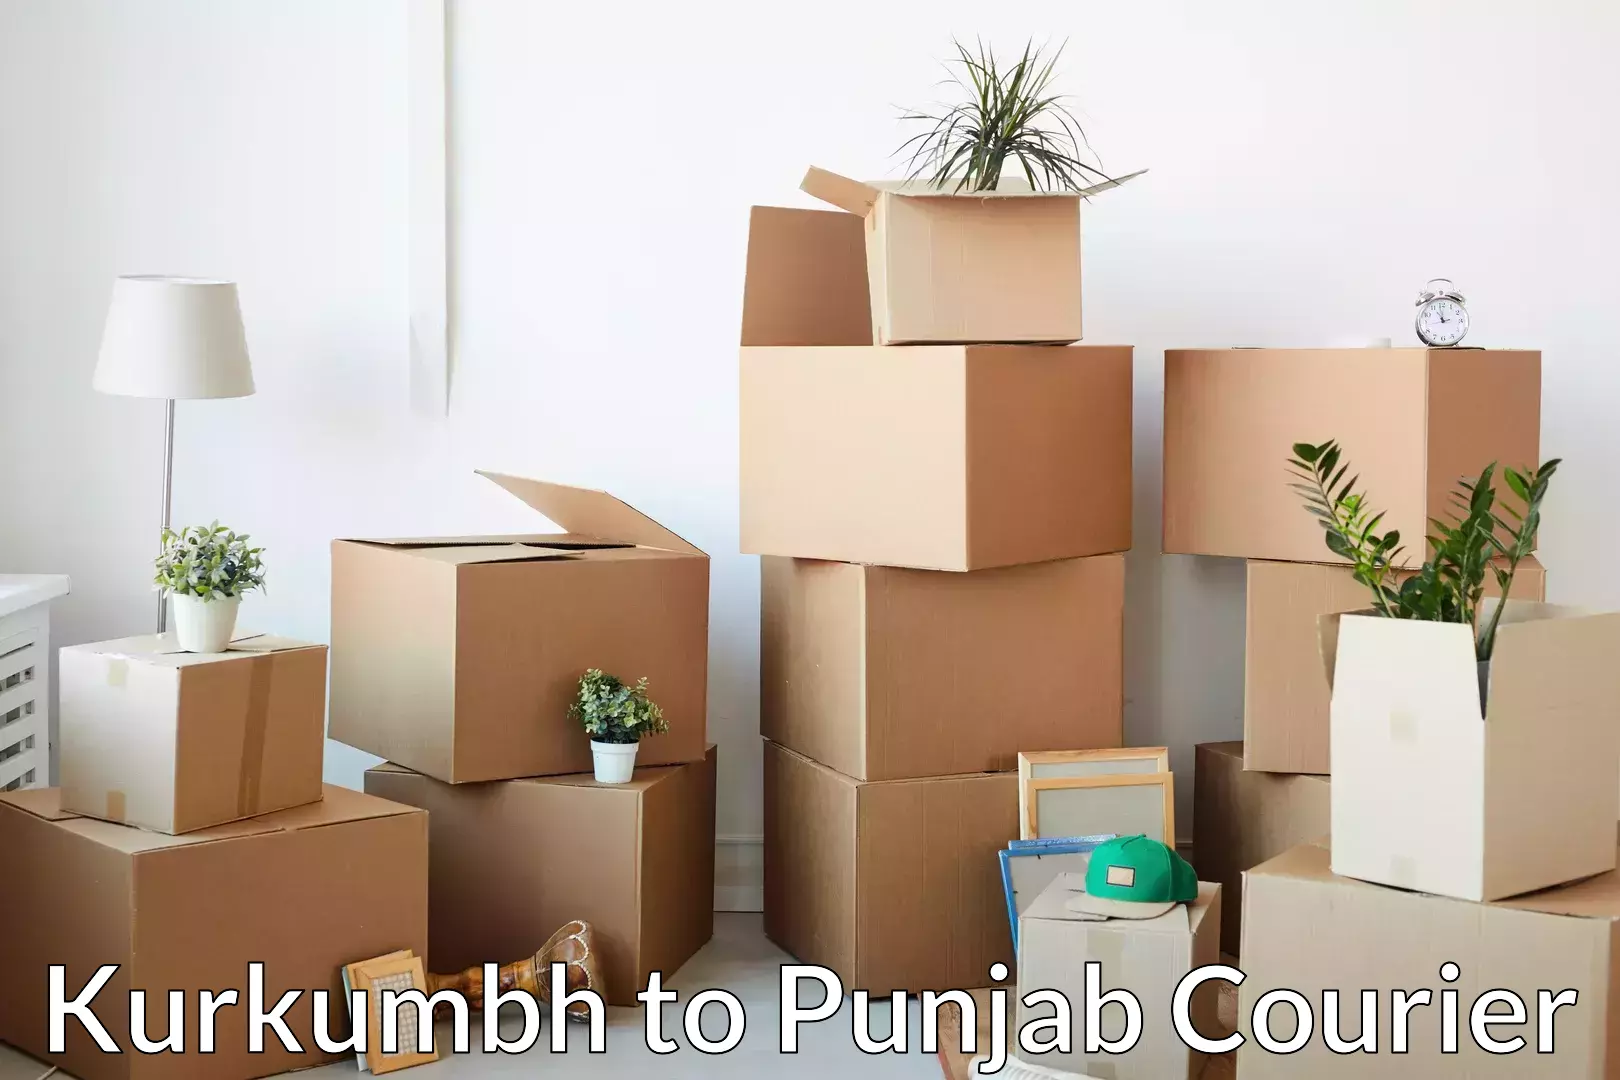 Trusted furniture movers Kurkumbh to Rupnagar